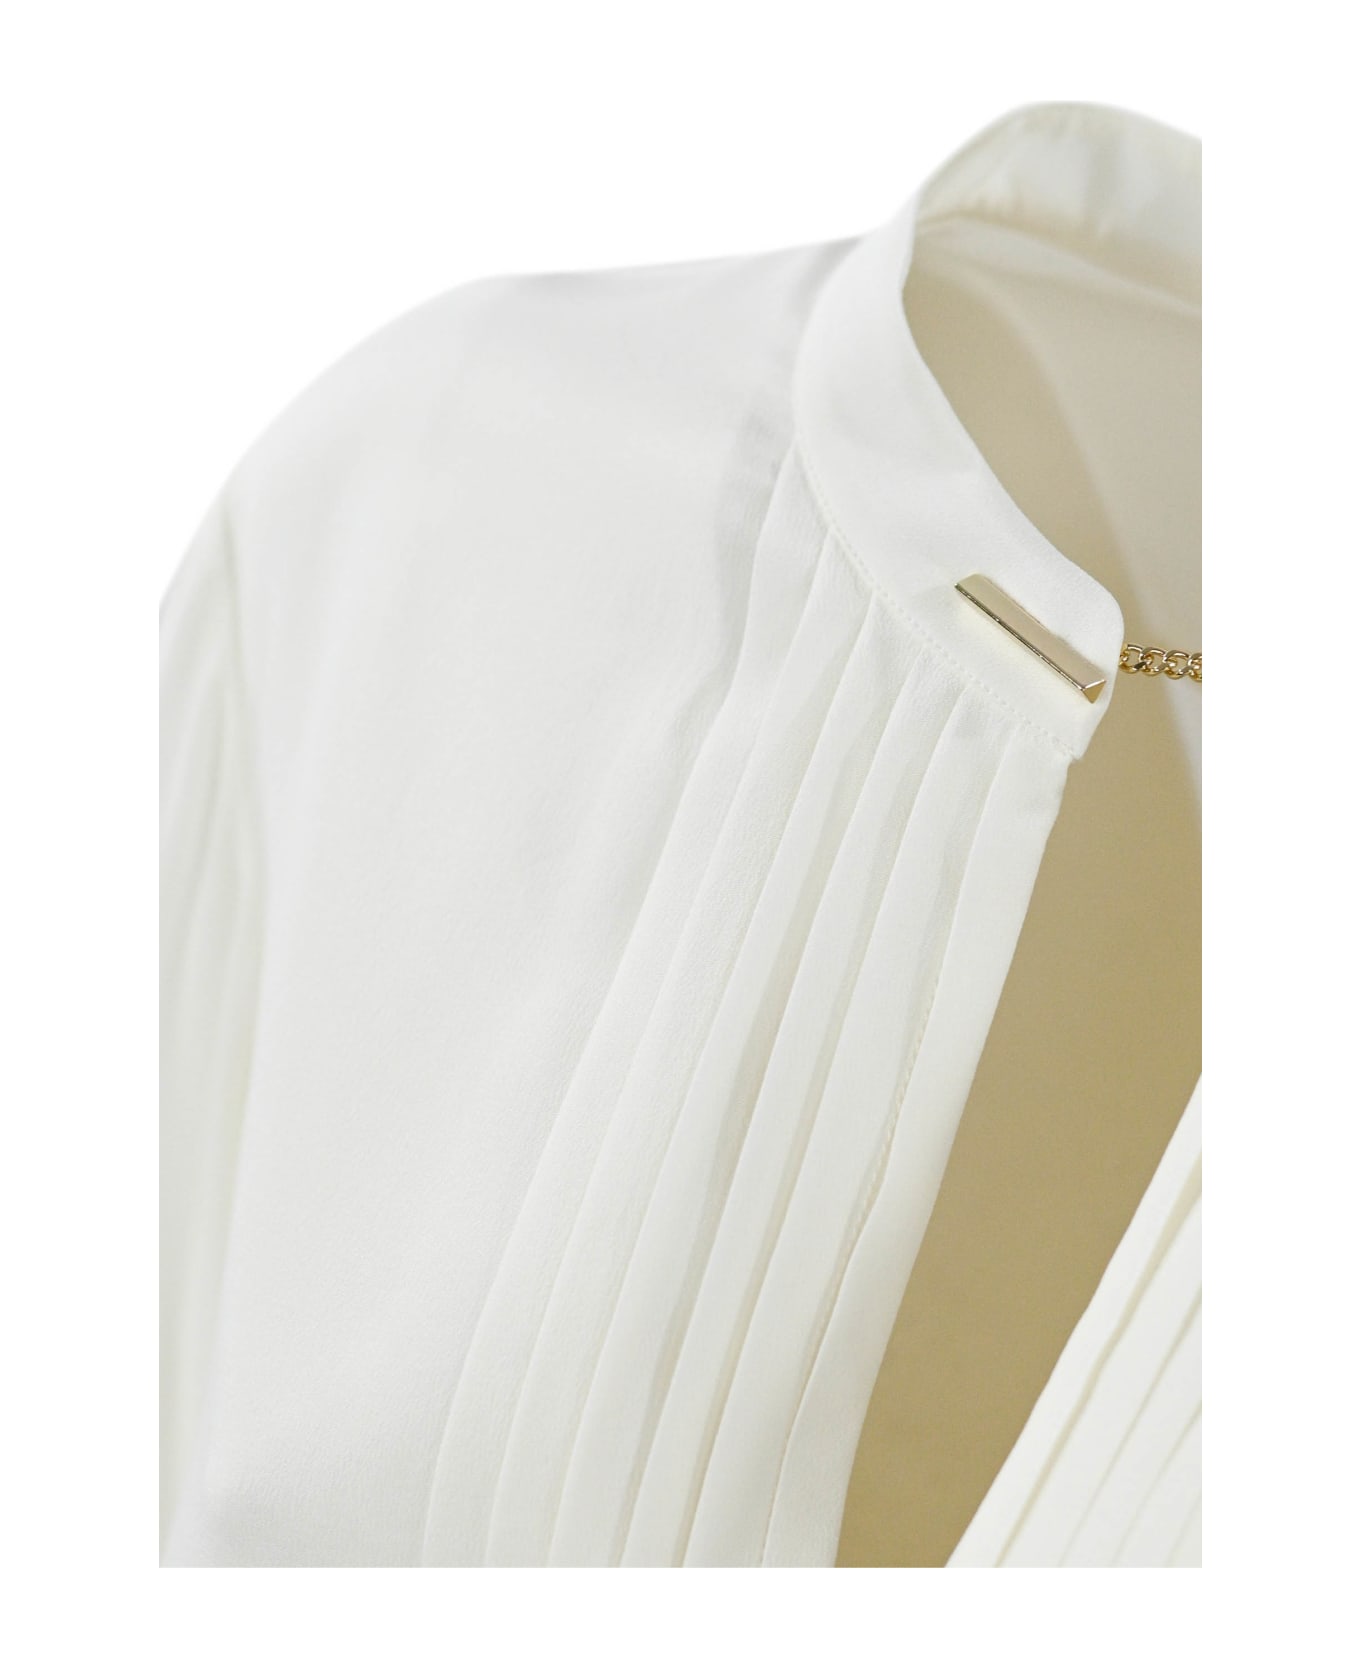 Max Mara Studio Shirt With Ribs And Cufflinks - White